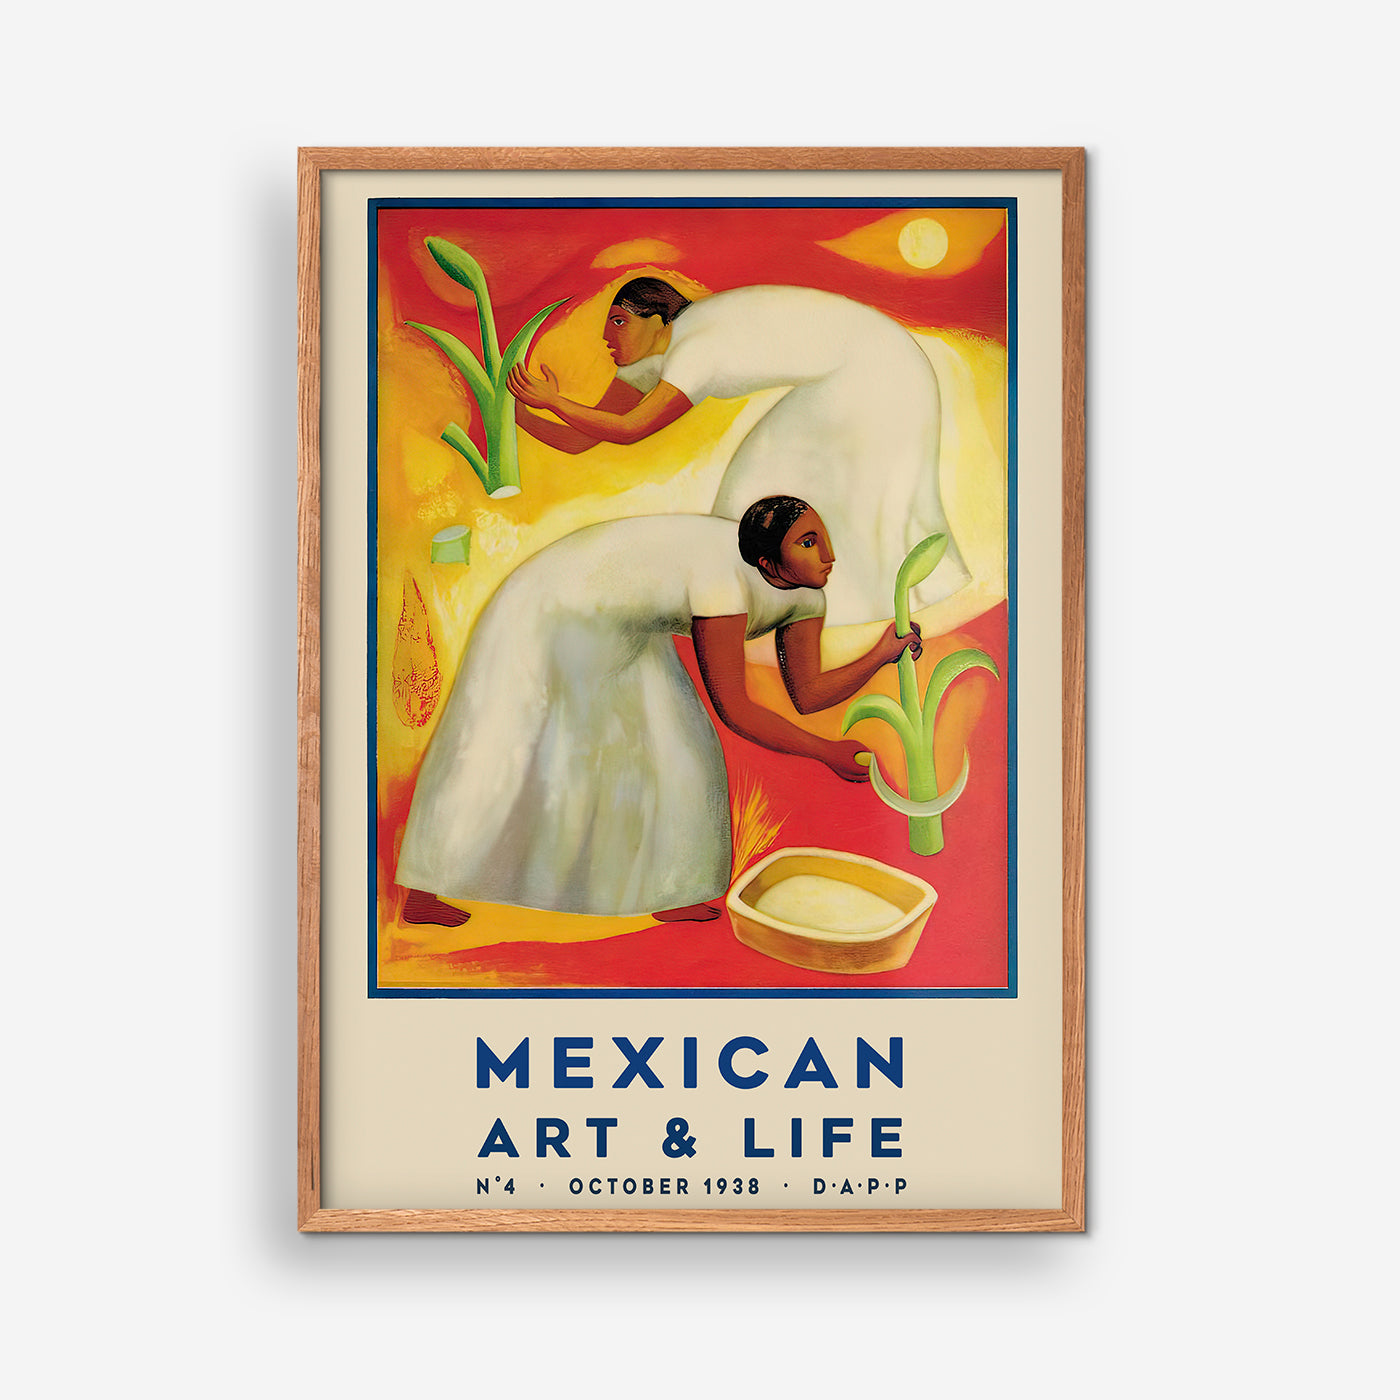 Mexican Art & Life, October 1938